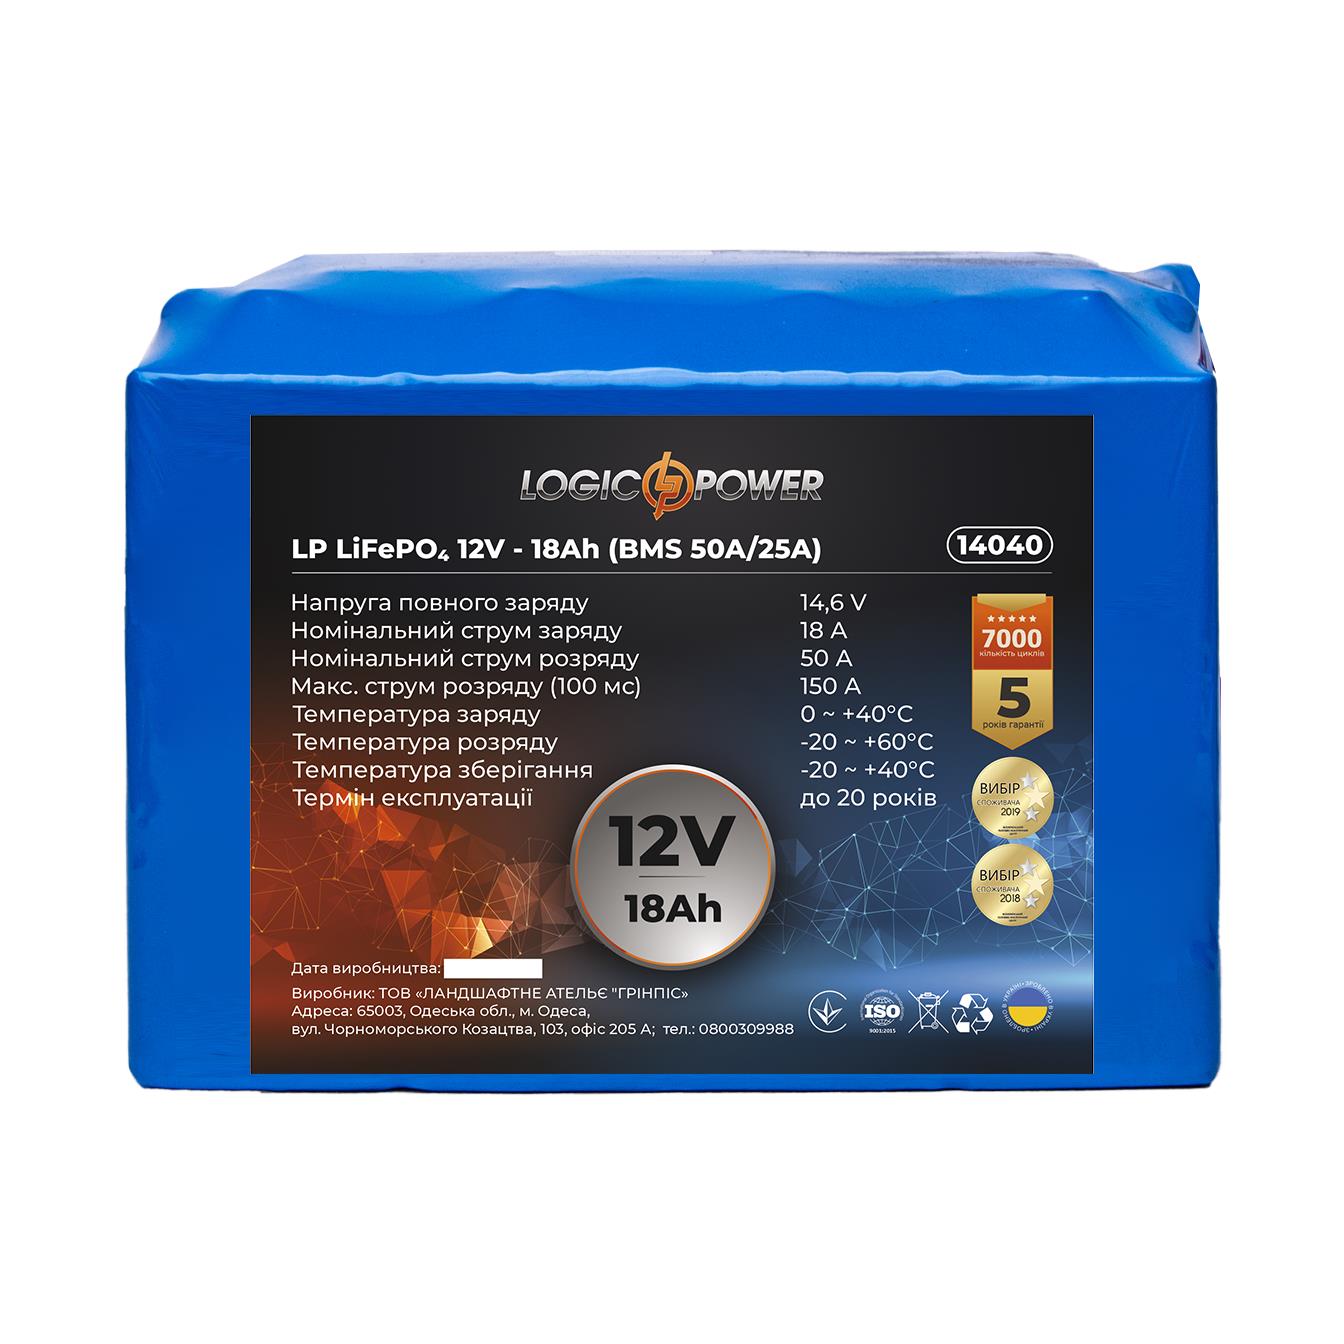 Акумулятор літій-залізо-фосфатний LogicPower LP LiFePO4 12V - 18 Ah (BMS 50A/25A) (14040)